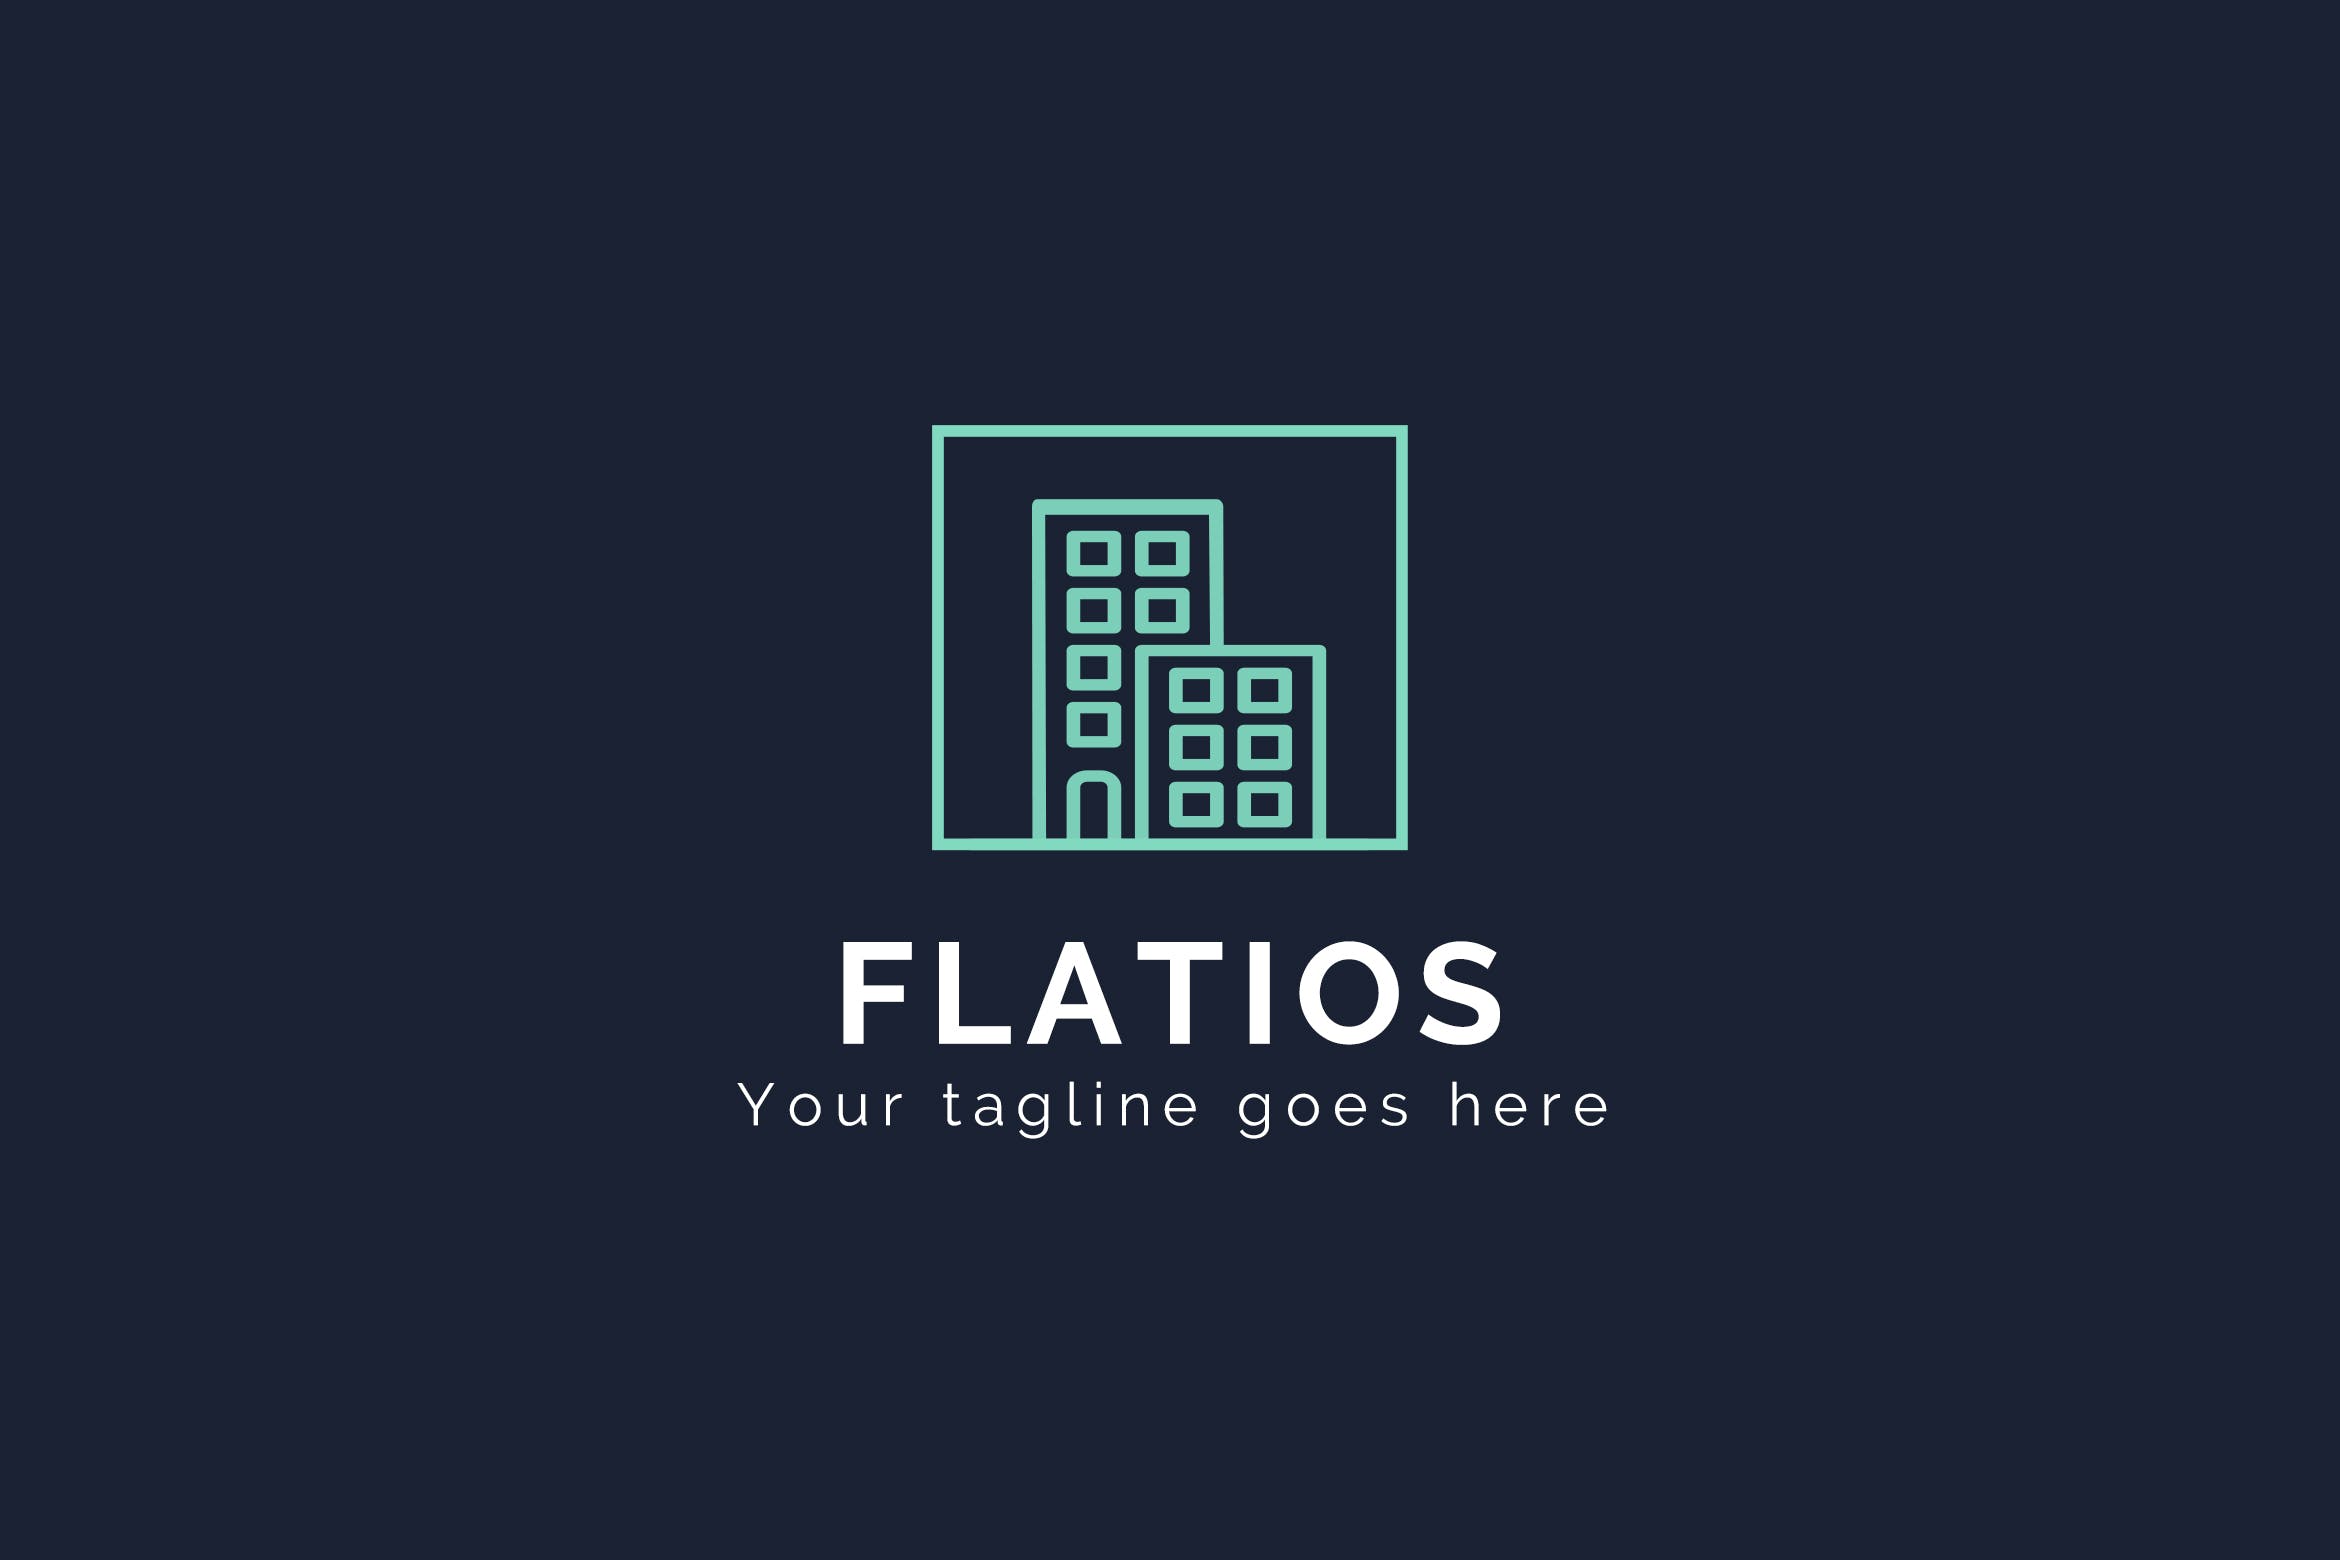 建筑大厦标志几何图形Logo设计素材库精选模板 Flatios – Construction Logo Template插图